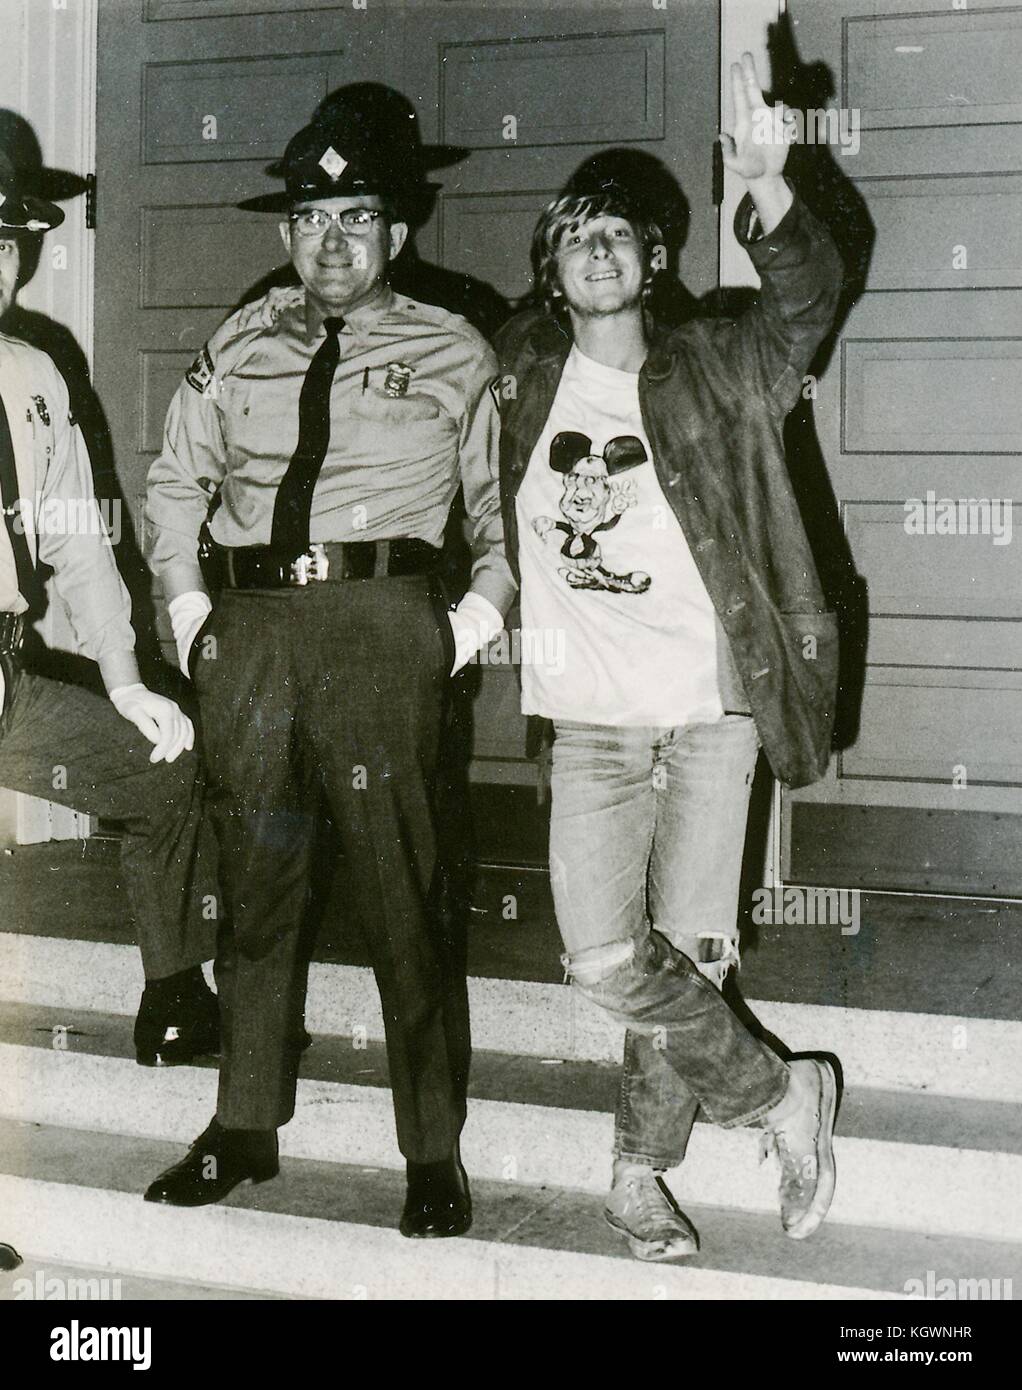 En étudiant une tenue hippie, y compris un t-shirt avec une caricature de l'homme politique représentant agnew Spiro Agnew dans le personnage Mickey Mouse, posant avec son bras autour d'un adjoint du shérif sur les marches d'un bâtiment lors d'une guerre du vietnam élève sit-in de protestation à la North Carolina State University, Raleigh, Caroline du Nord, 1970. Banque D'Images